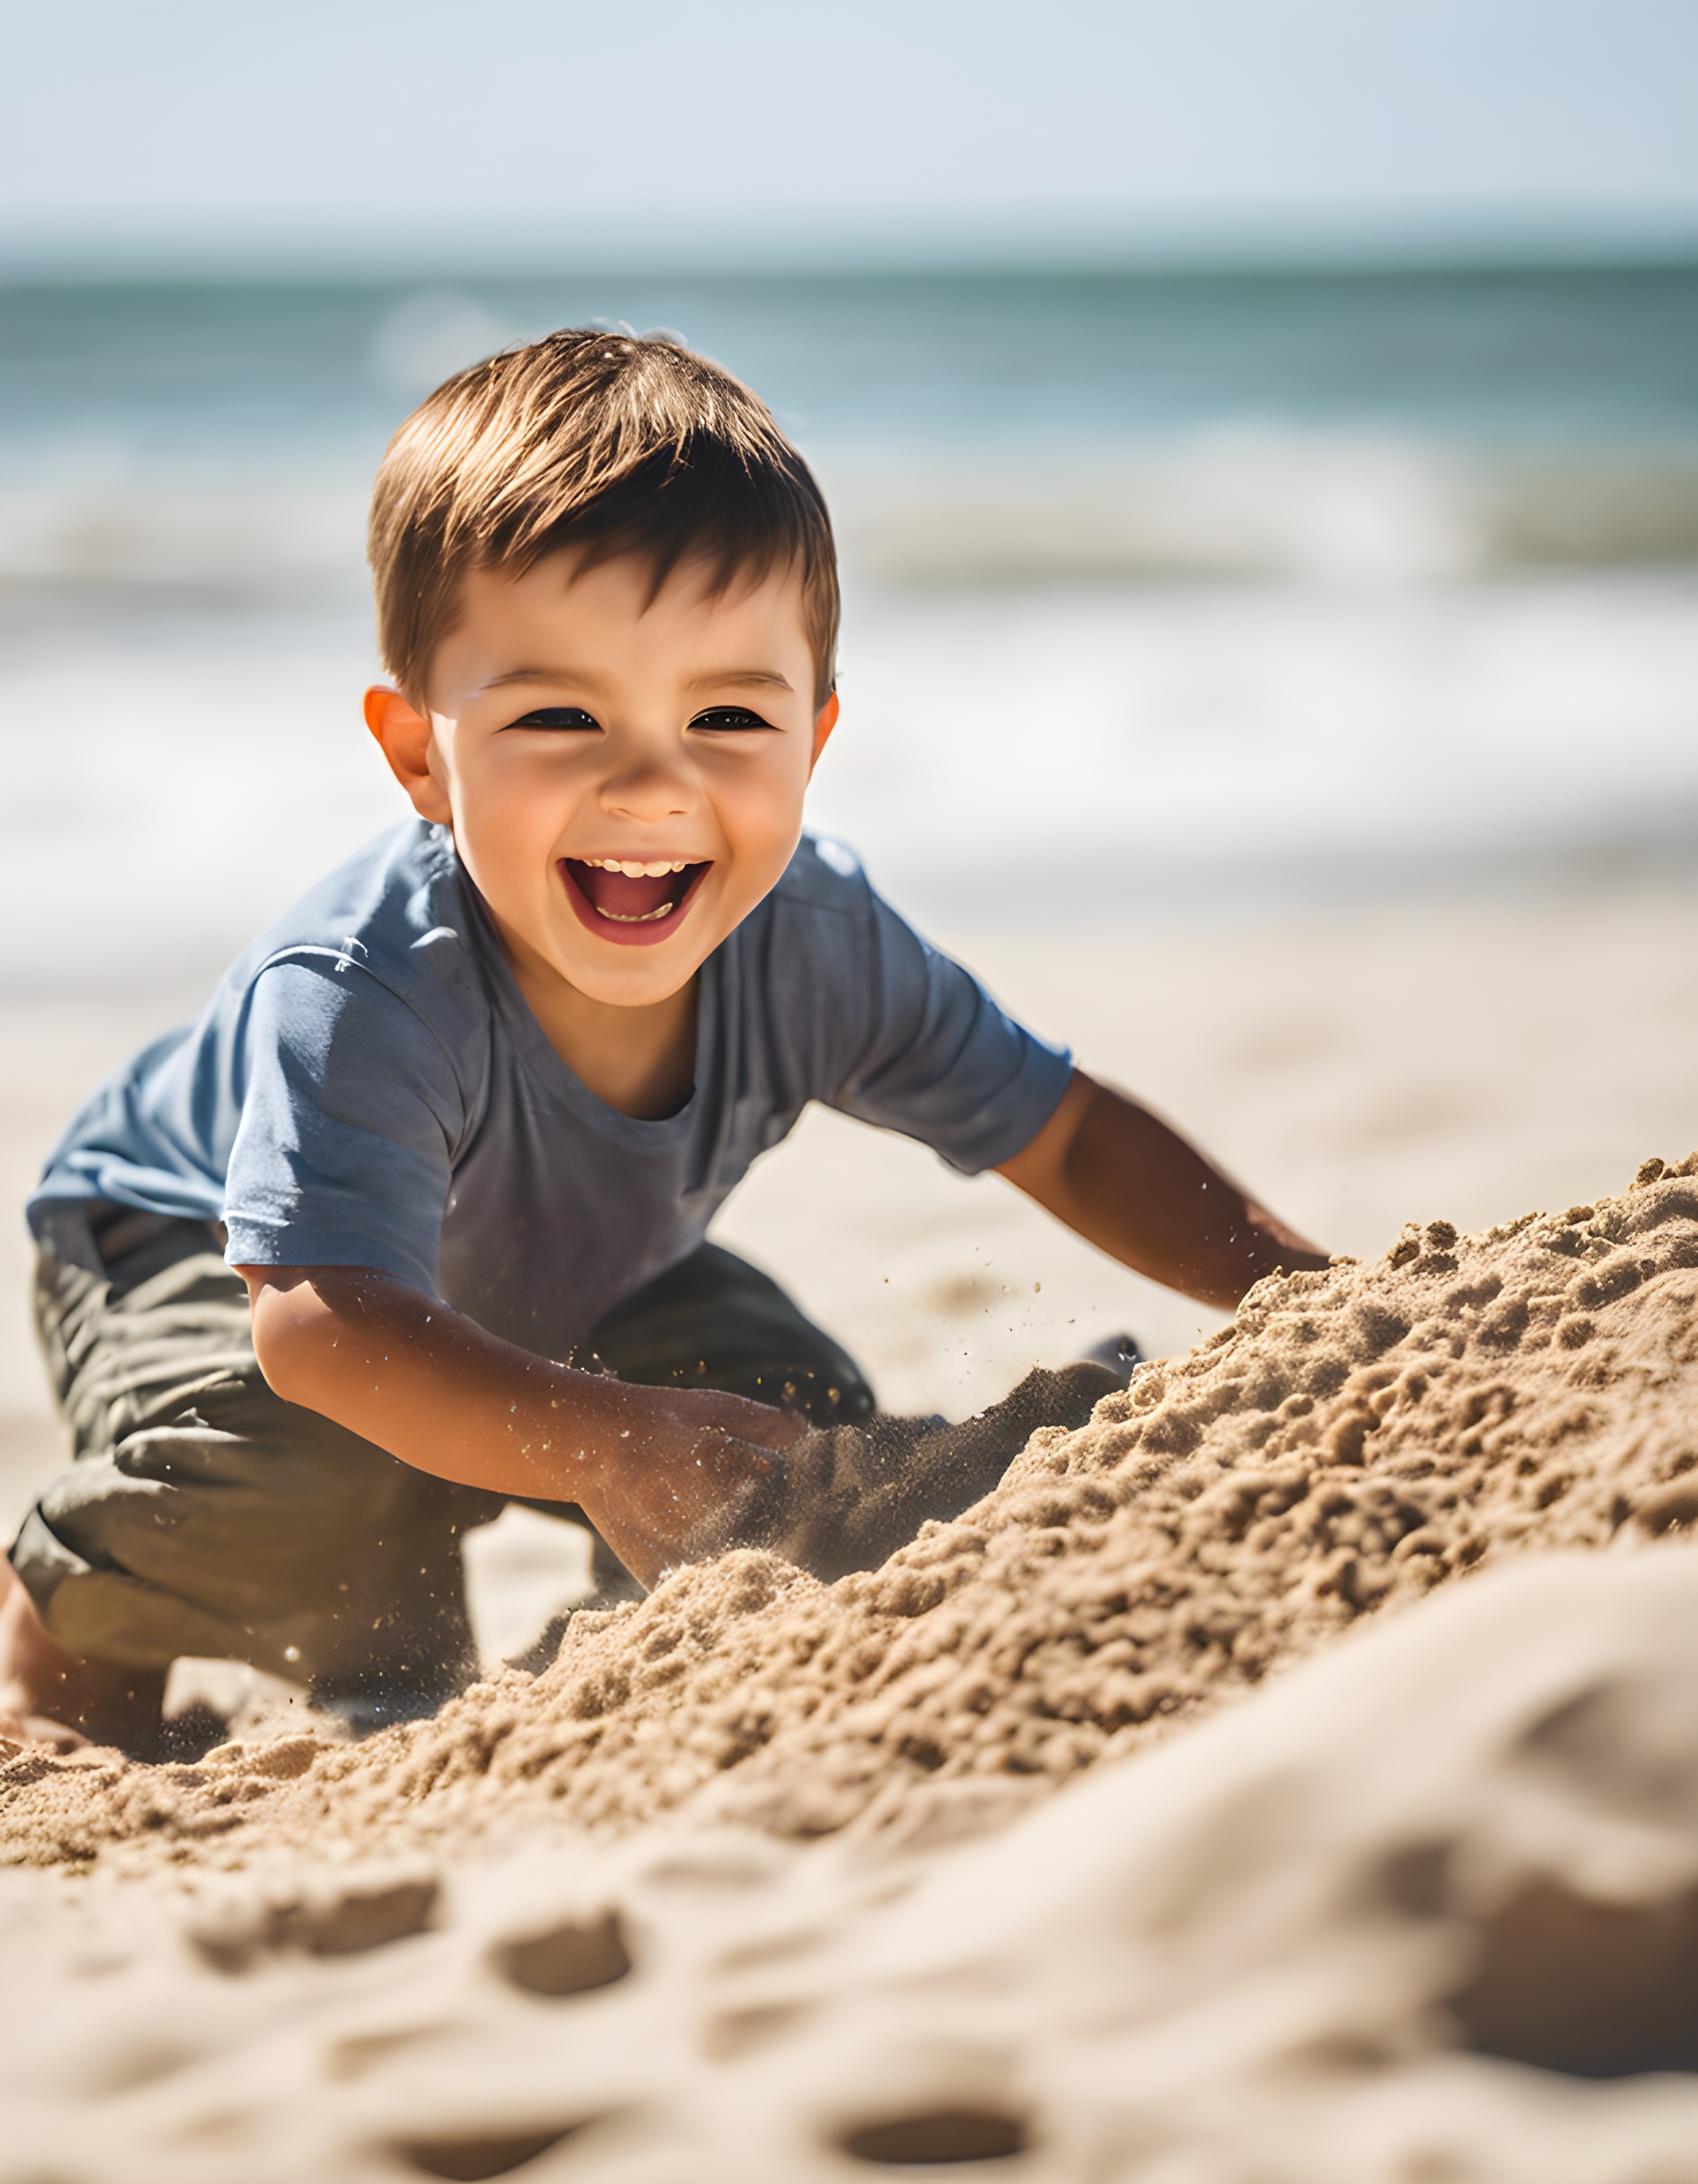 สร้างภาพ เด็กน้อยเล่นทรายอยู่ริมชายหาด สไตล์ภาพถ่าย ภาพถ่ายที่มีความละเอียดสูง สมจริง